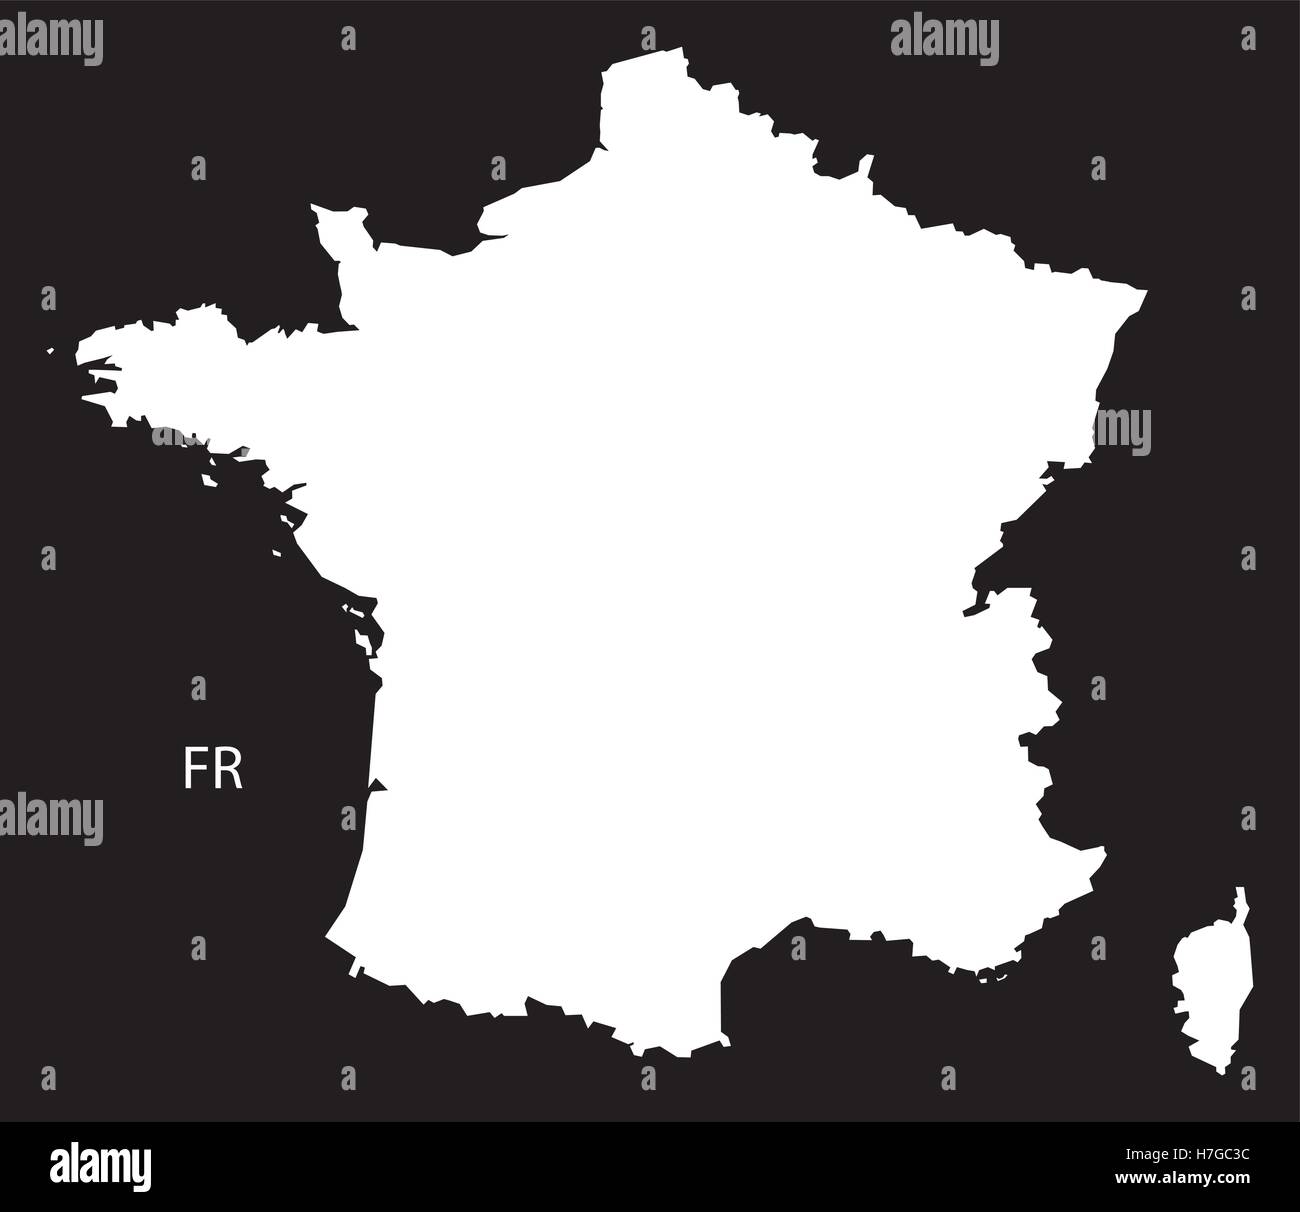 Frankreich Karte schwarz weiß Stock Vektor